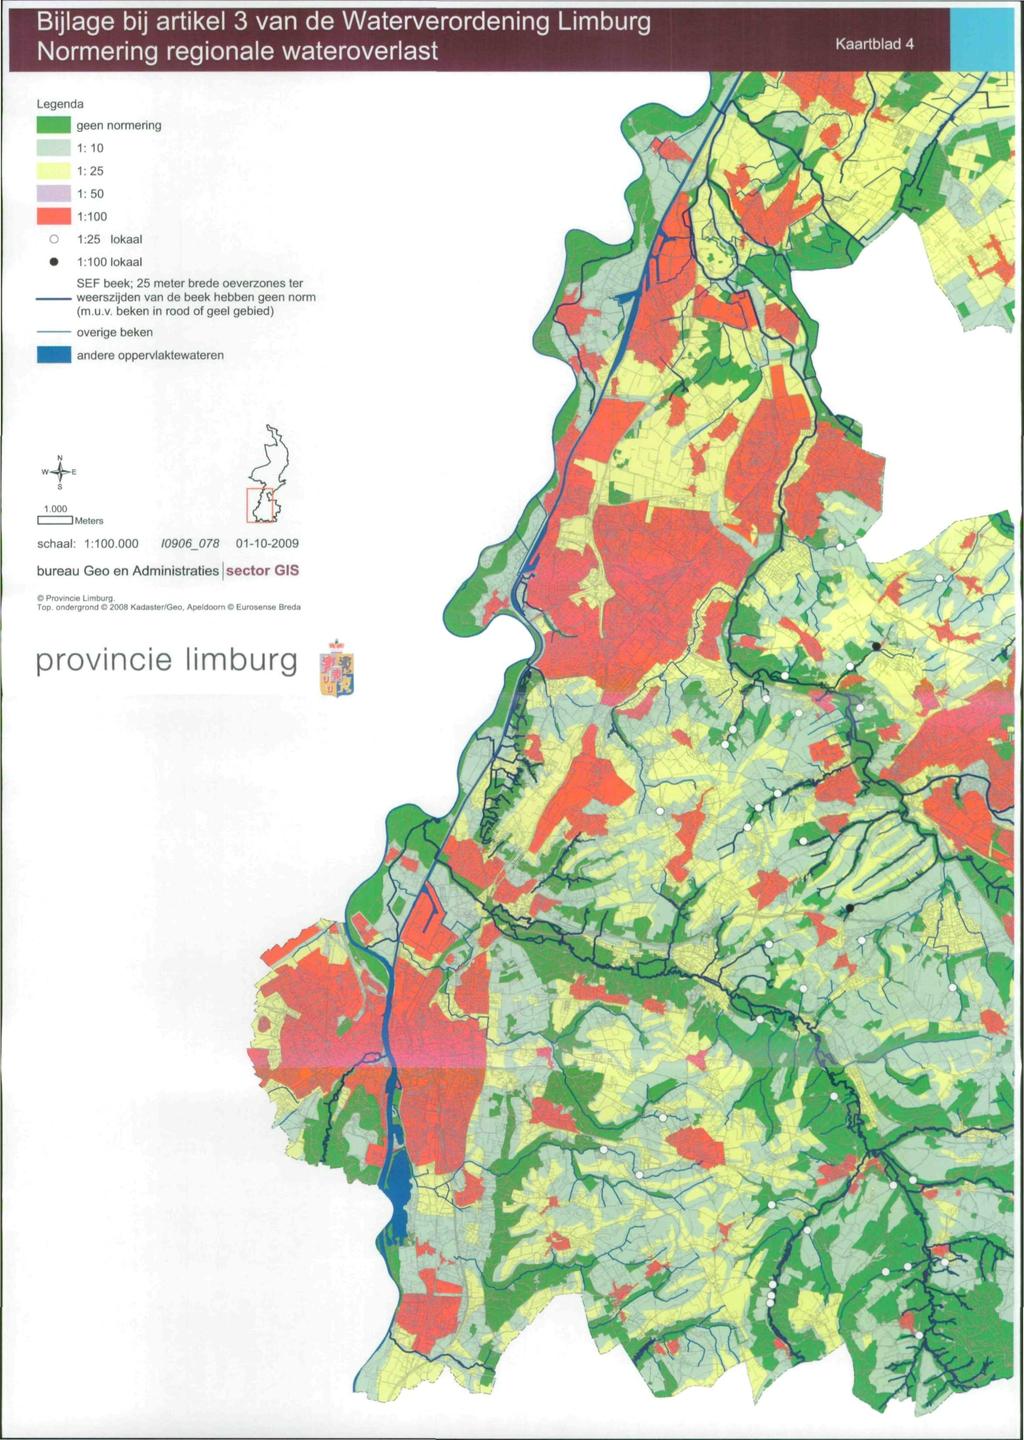 Bijlage bij artikel 3 van de Waterverordening Limburg ormering regionale wateroverlast Kaartblad 4 l geen normering 1: 10 1:25 O 1:25 lokaal 1:100 lokaal SEF beek; 25 meter brede oeverzones ter